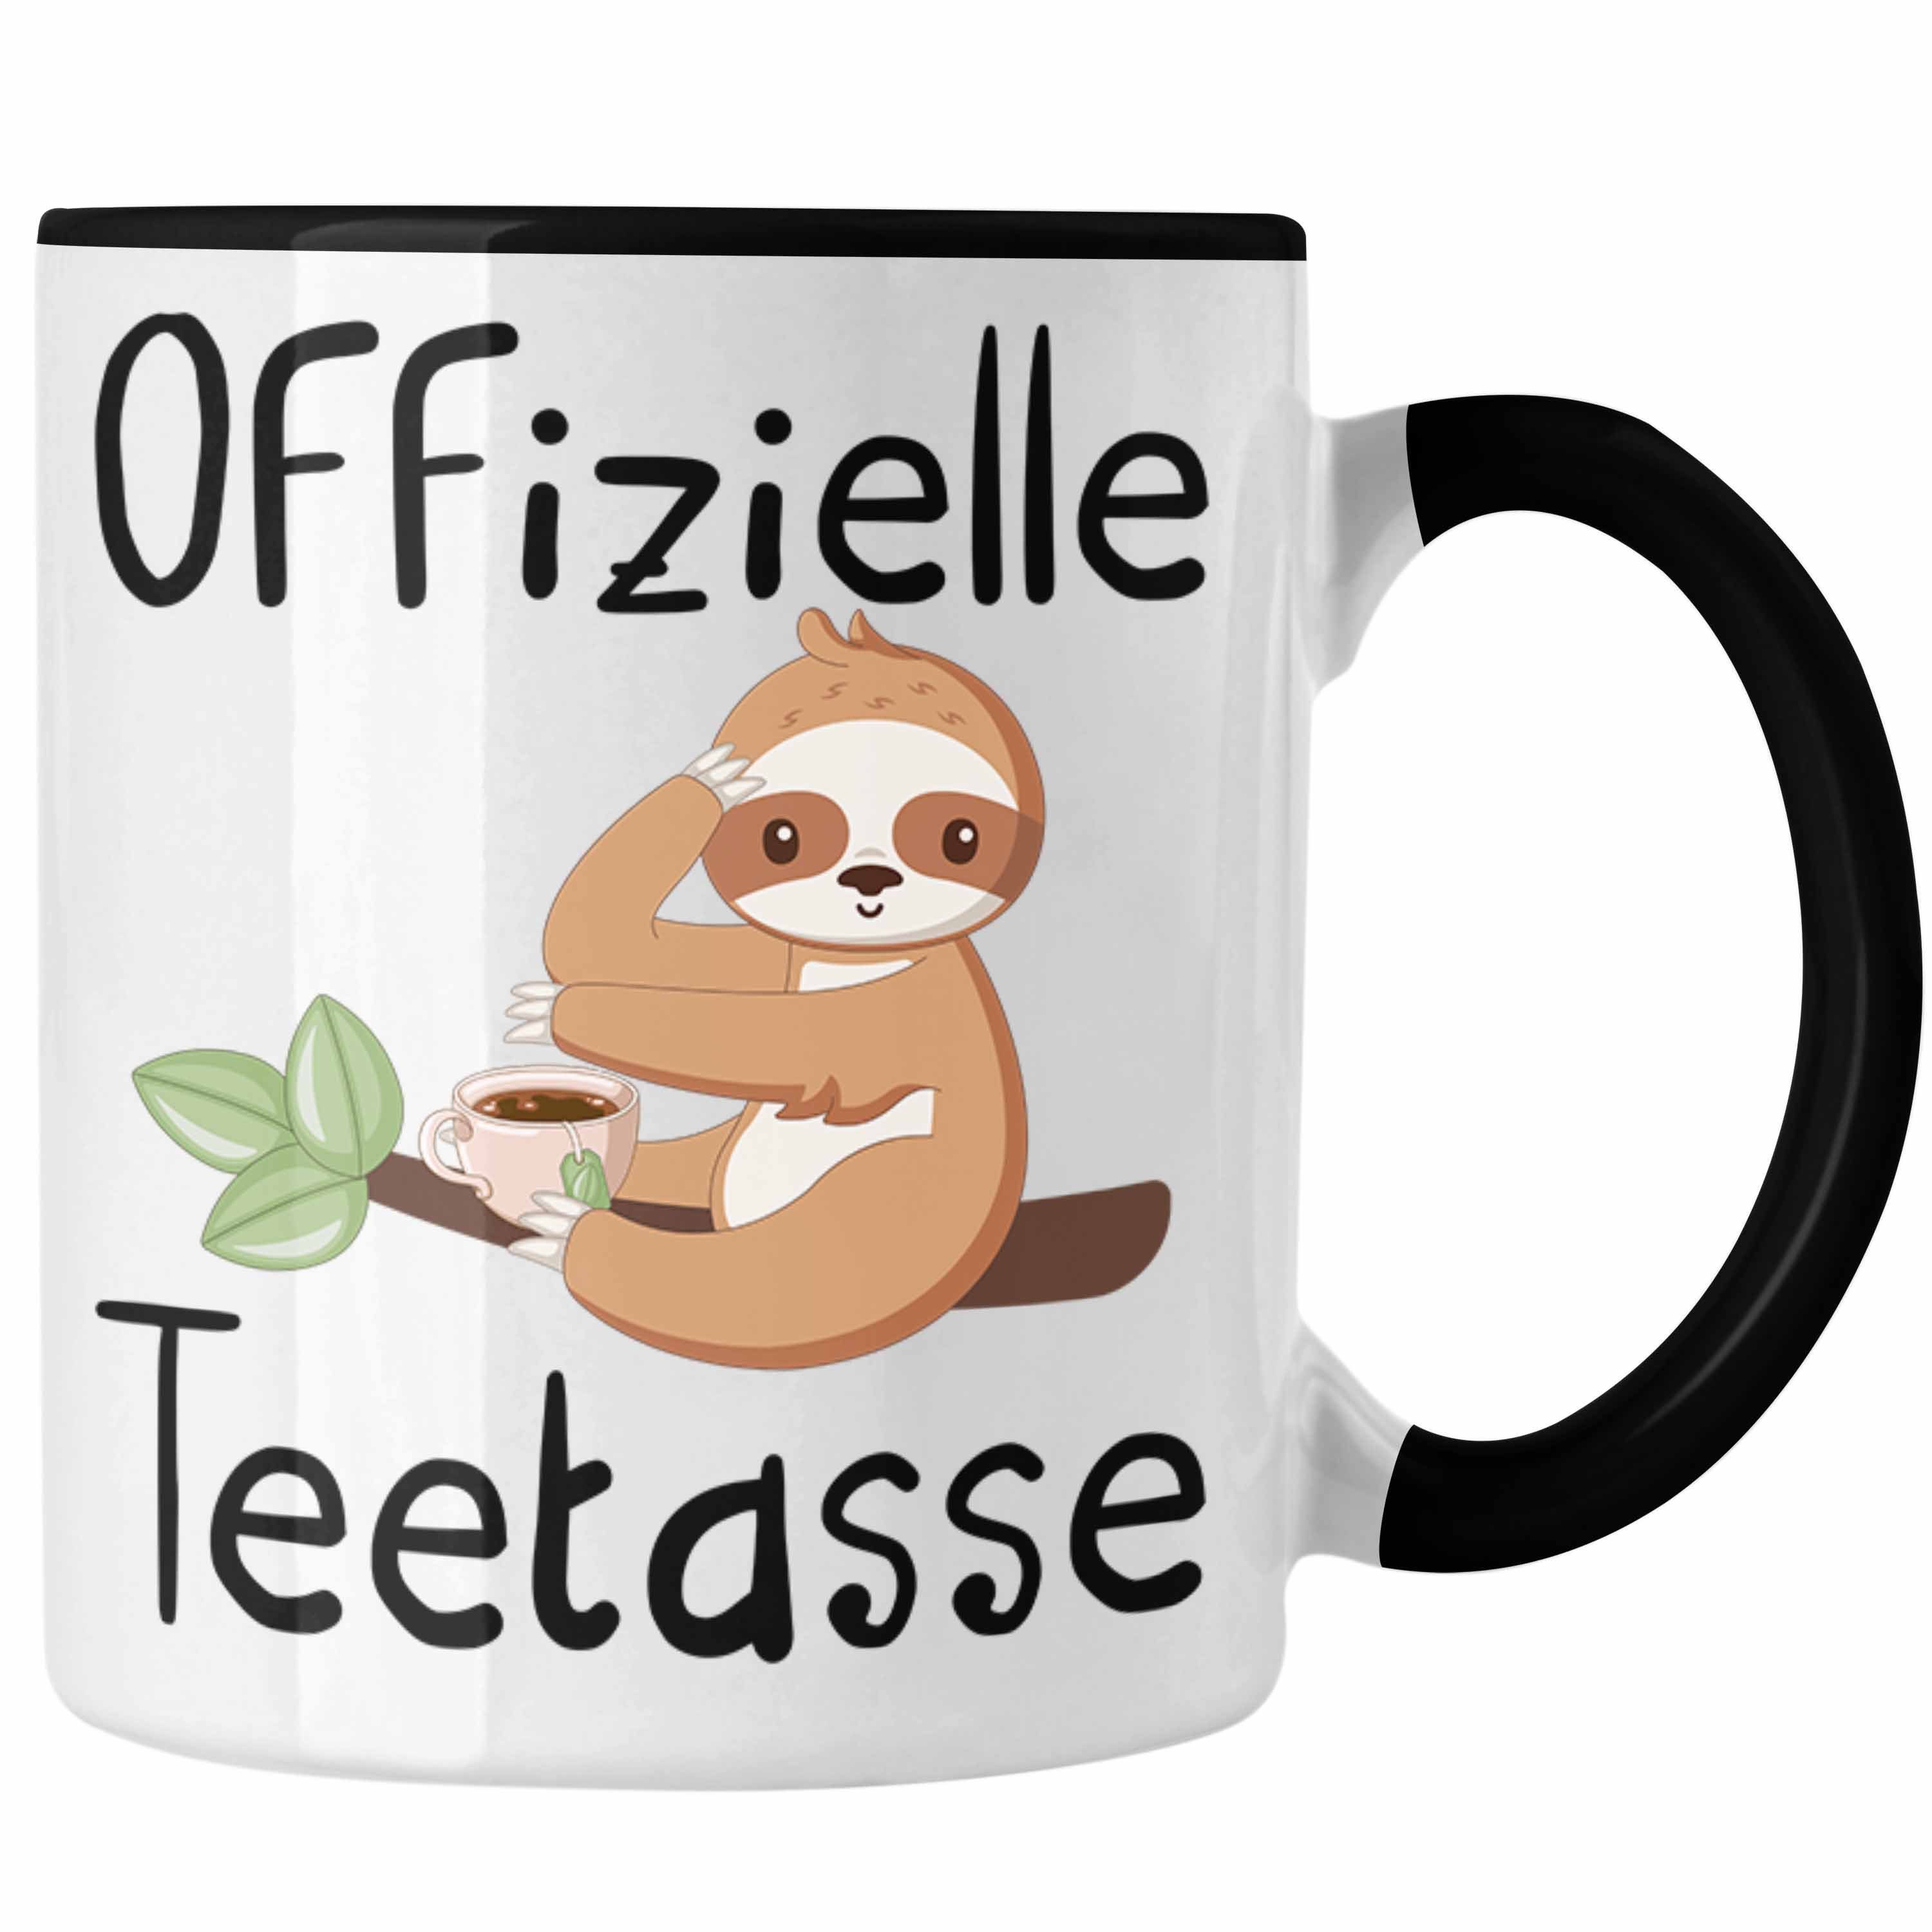 Offizielle Teetrinker Tee-Tasse Teetasse Tasse Trendation Schwarz Geschenk Geschenkidee